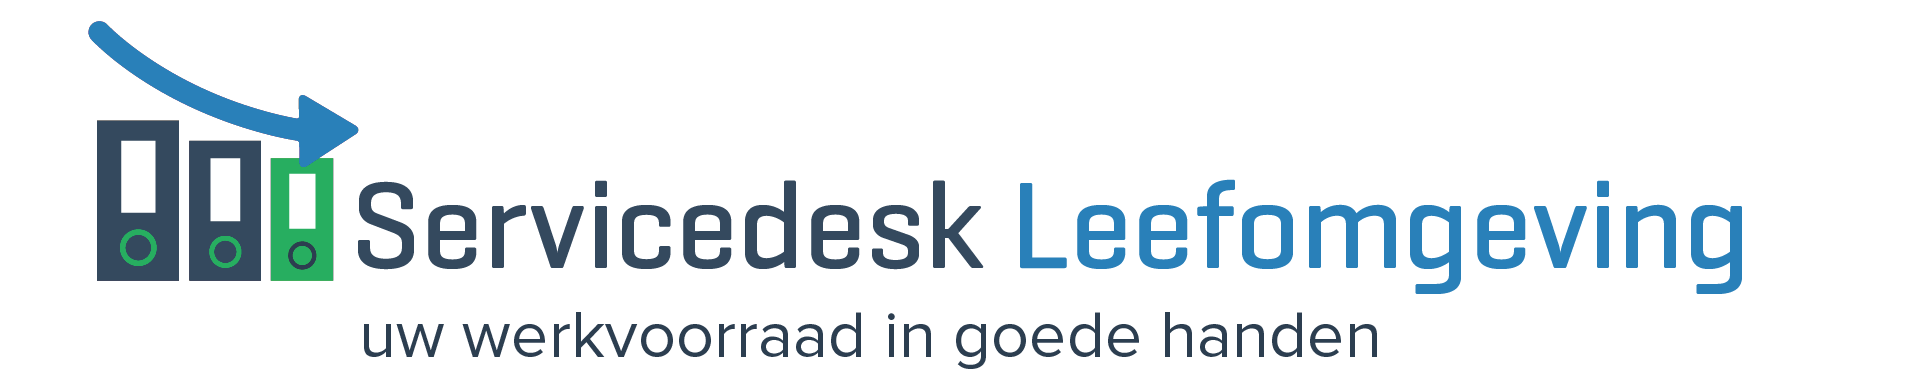 Servicedesk Leefomgeving logo